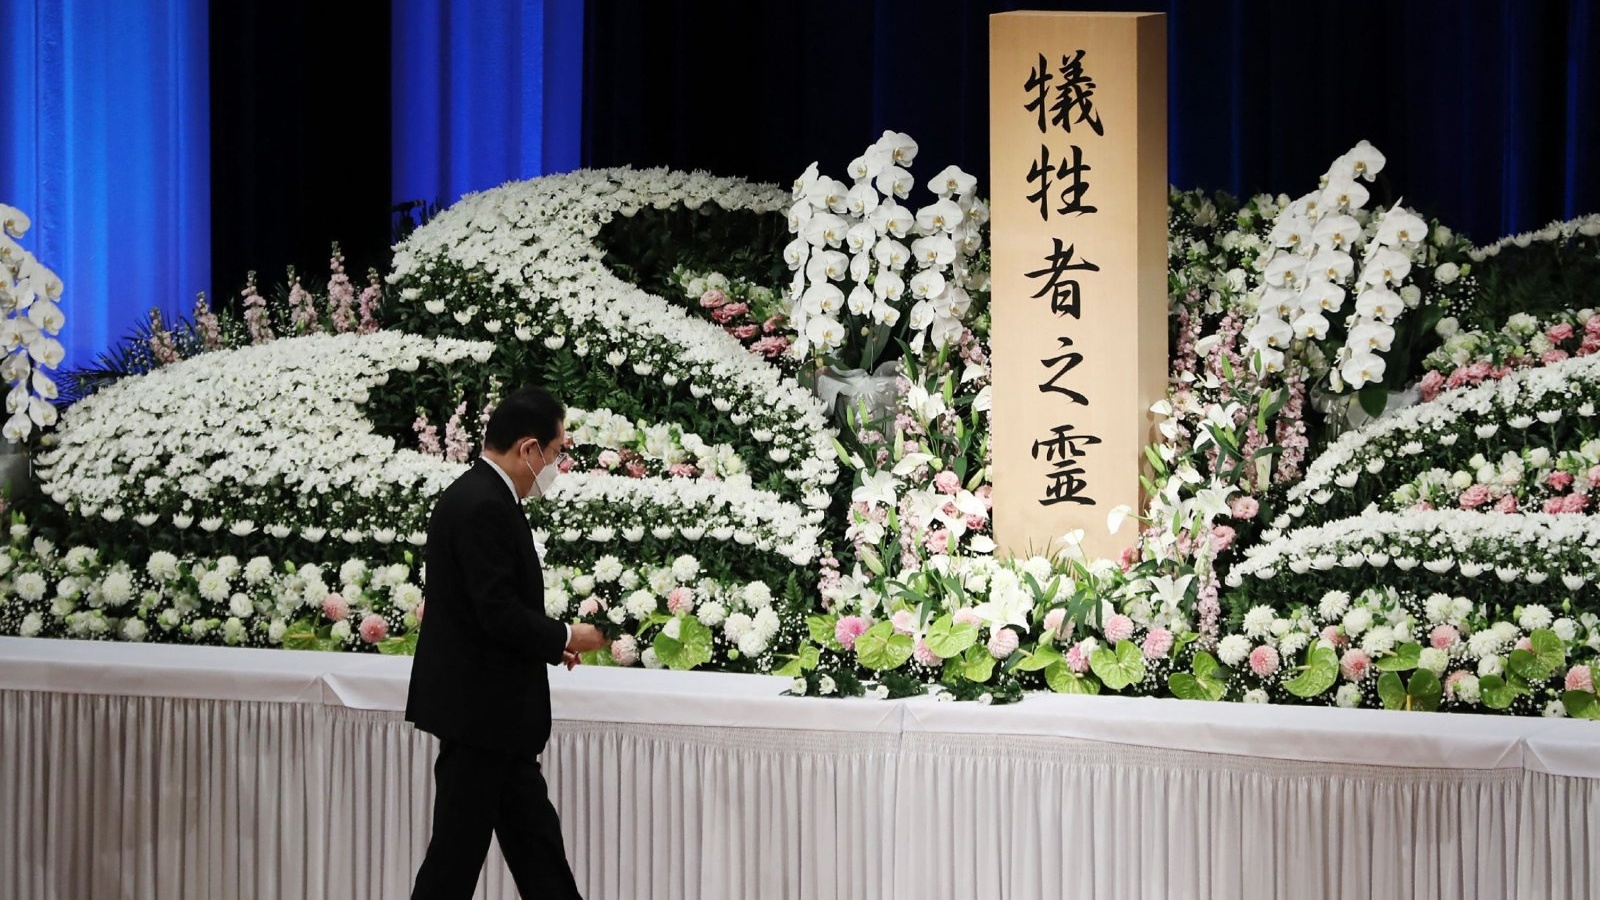 رئيس الوزراء الياباني فوميو كيشيدا يقدم الزهور في حفل الذكرى لإحياء الذكرى الثانية عشرة لزلزال 2011 وتسونامي والكارثة النووية ، في فوكوشيما، اليابان 11 مارس 2023